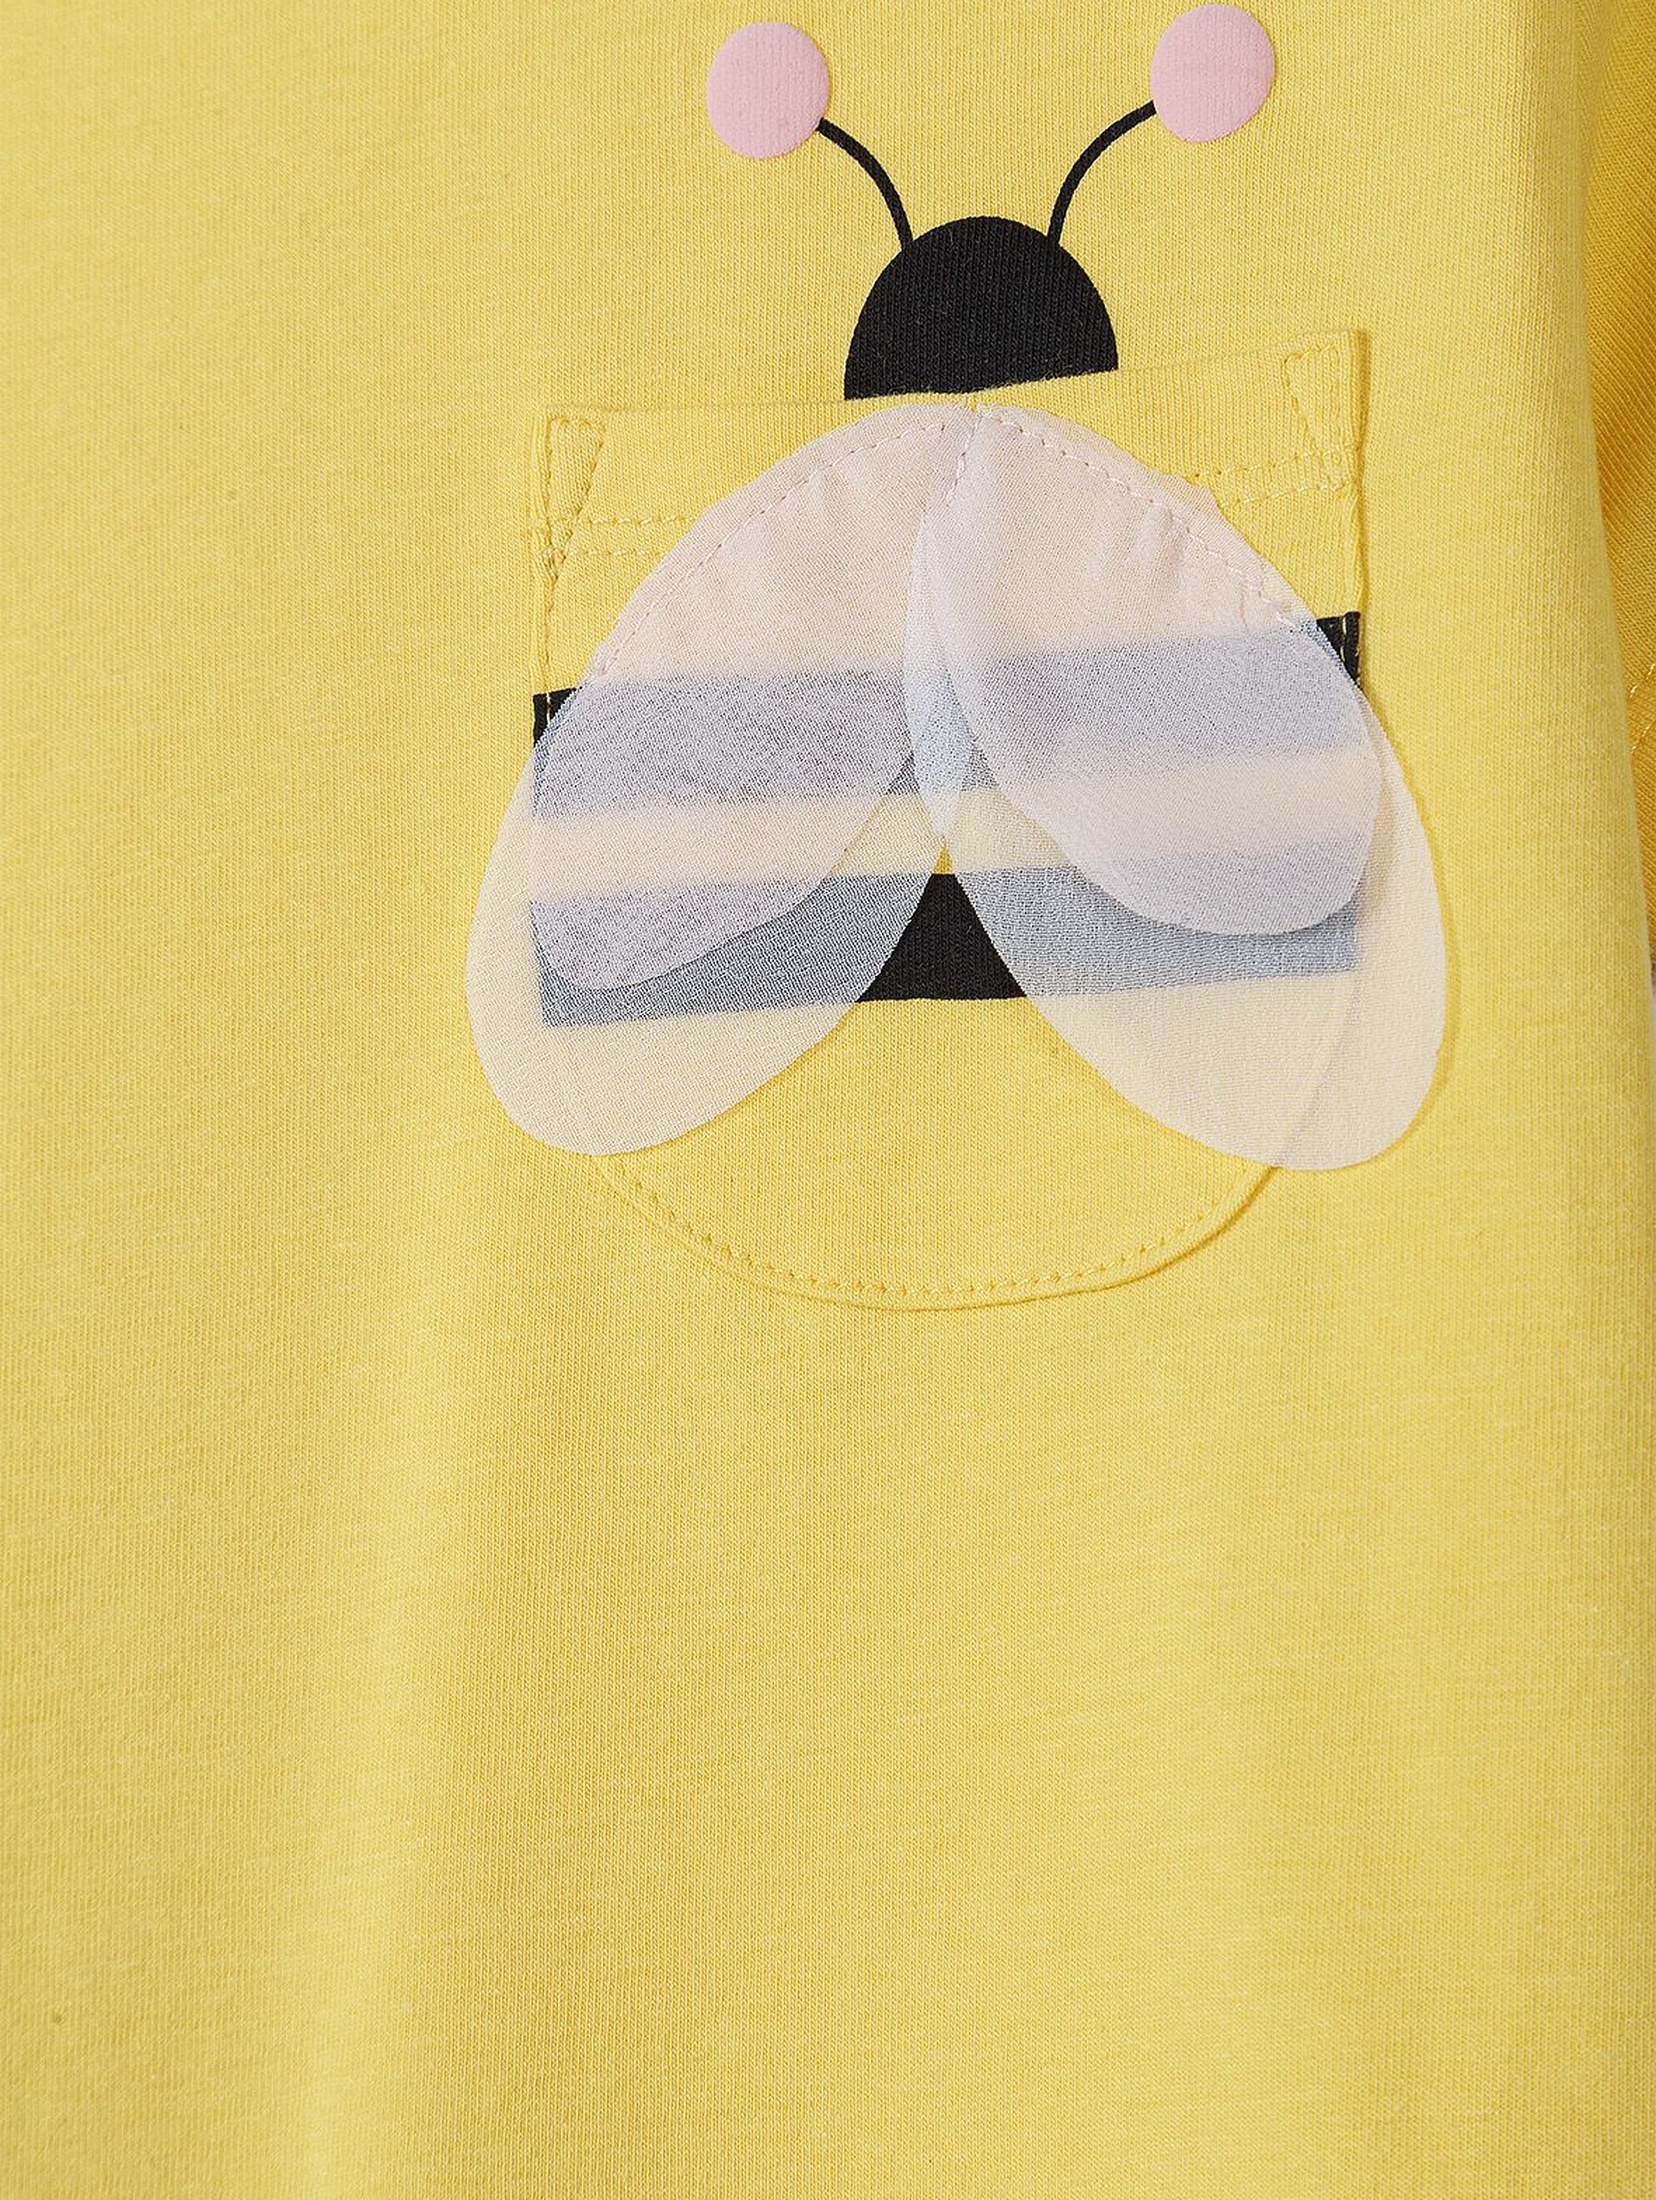 T-shirt dziewczęcy z kieszonką w kształcie pszczółki - żółta